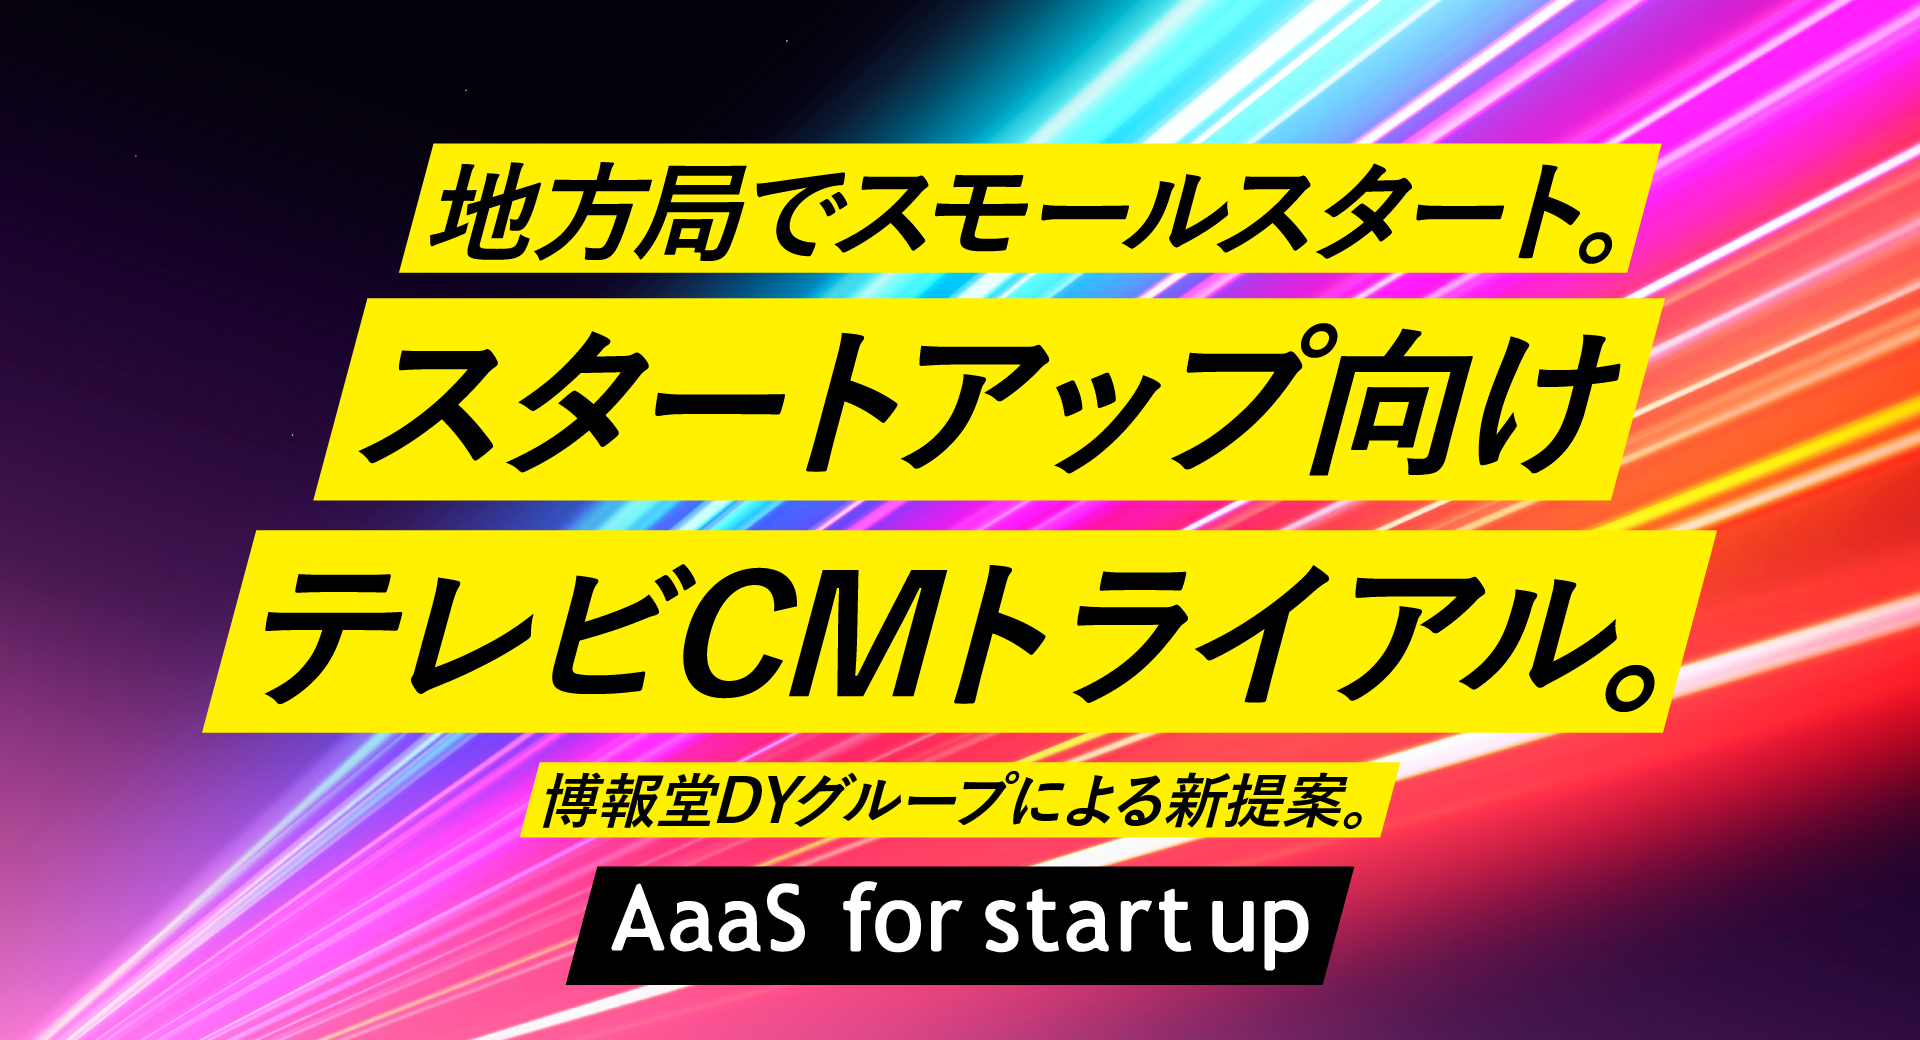 地方局でスモールスタート。スタートアップ向けテレビCMトライアル。博報堂DYグループによる新提案。「AaaS for startup」